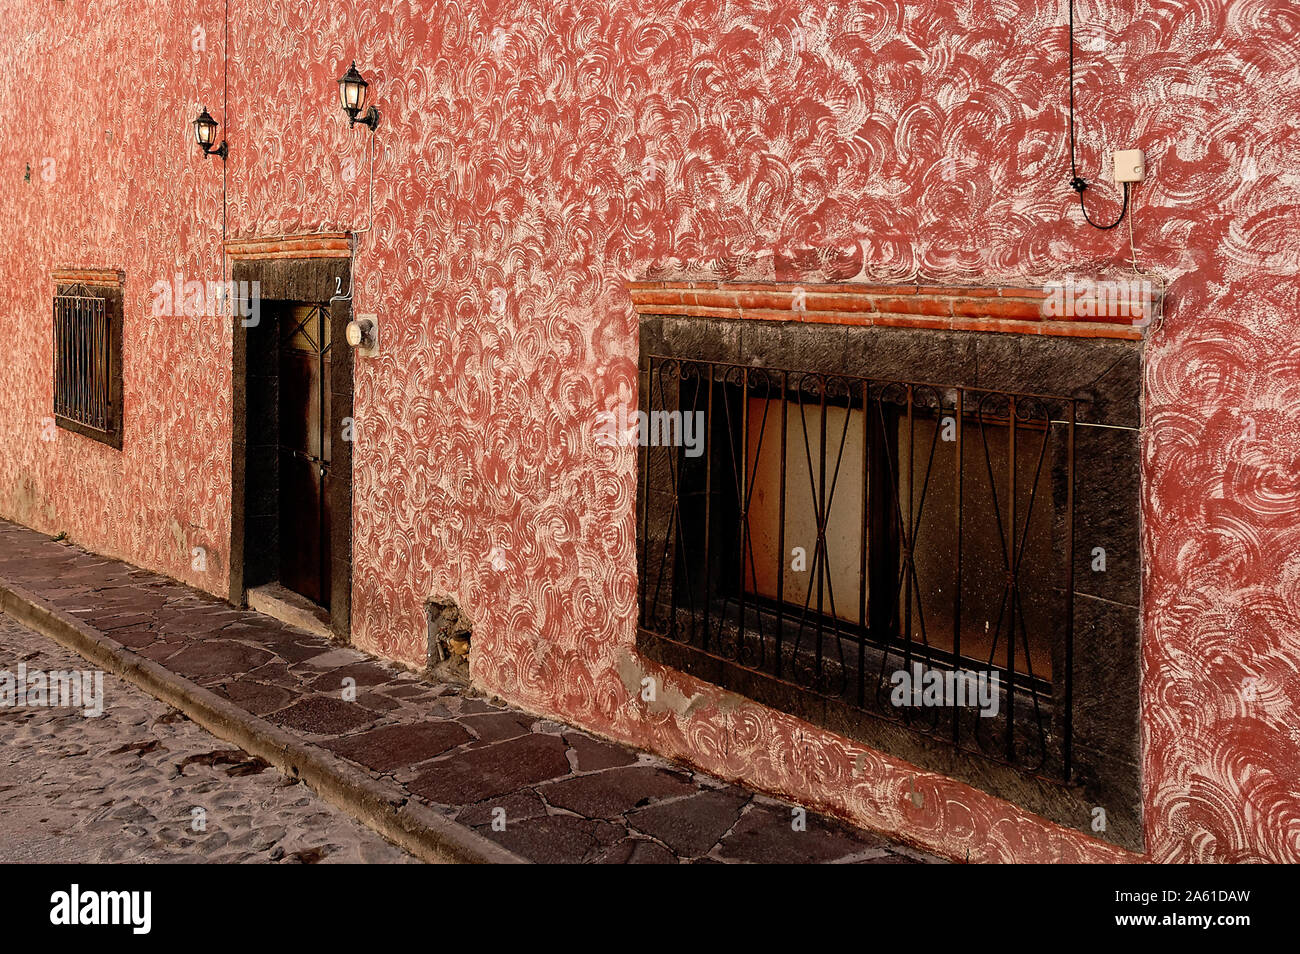 Bernal, Queretaro, Mexico - December 4, 2004: Architectural detail of house facade. Stock Photo